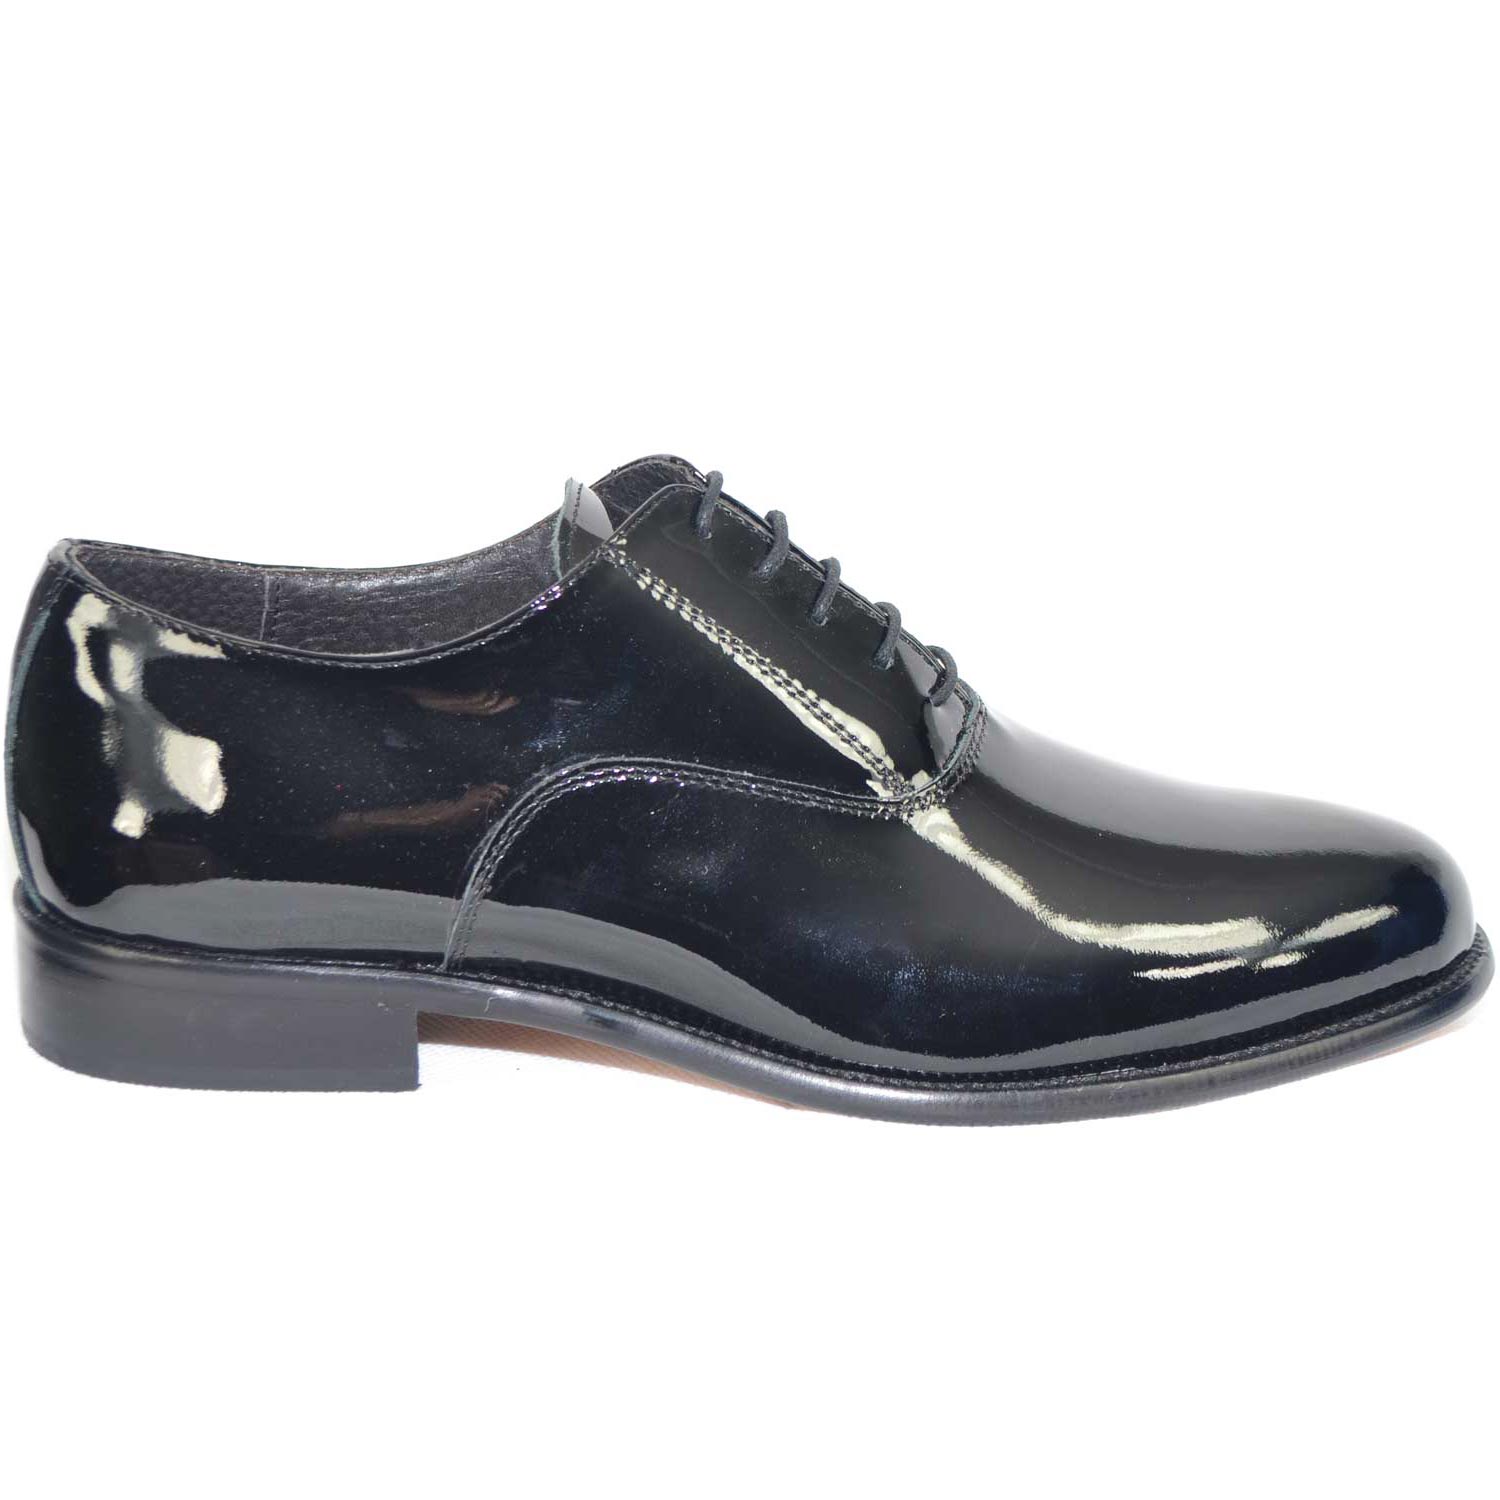 Scarpe calzature business man eleganti colore nero vernice vera pelle made in italy fondo in vero cuoio art 018 MP